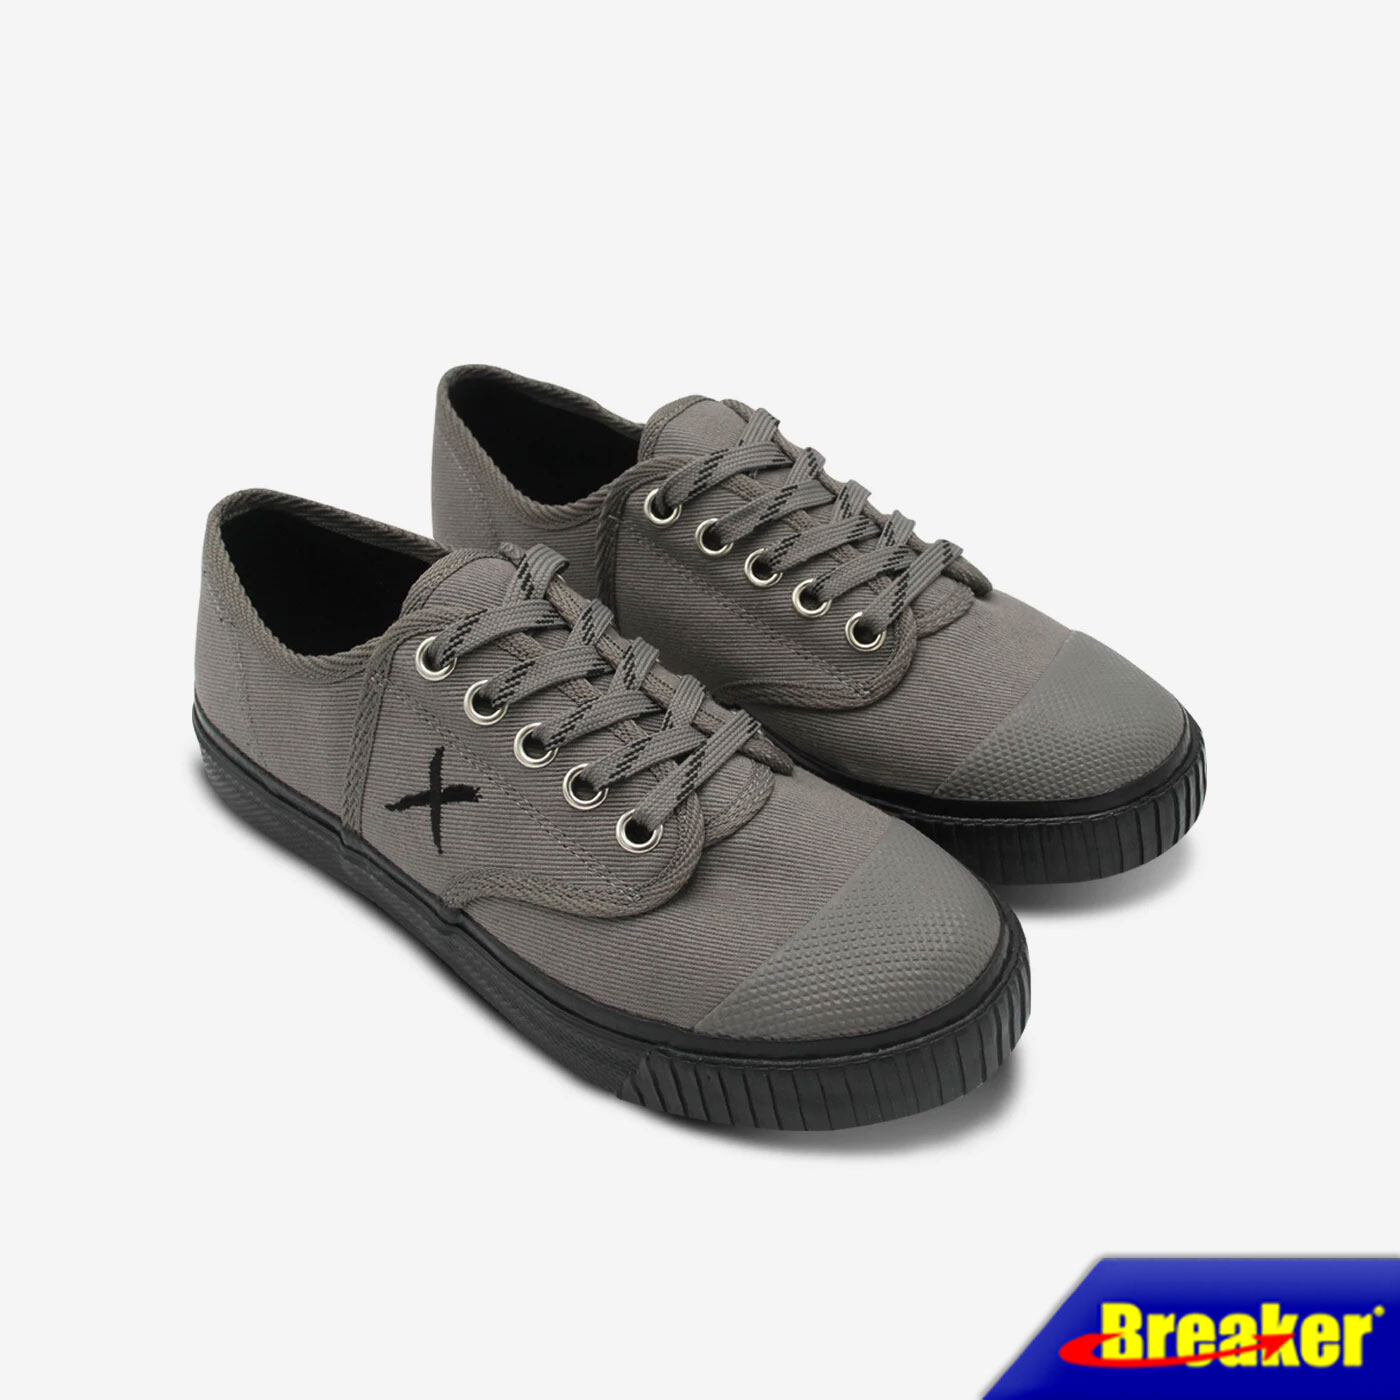 Breaker - X รองเท้าแฟชั่นผู้ชาย รองเท้าผู้ชาย รองเท้าผ้าใบเบรกเกอร์  (BK-X1) สี Gray ใส่ทำงาน ใส่ออกกำลังกายได้สบายเท้า